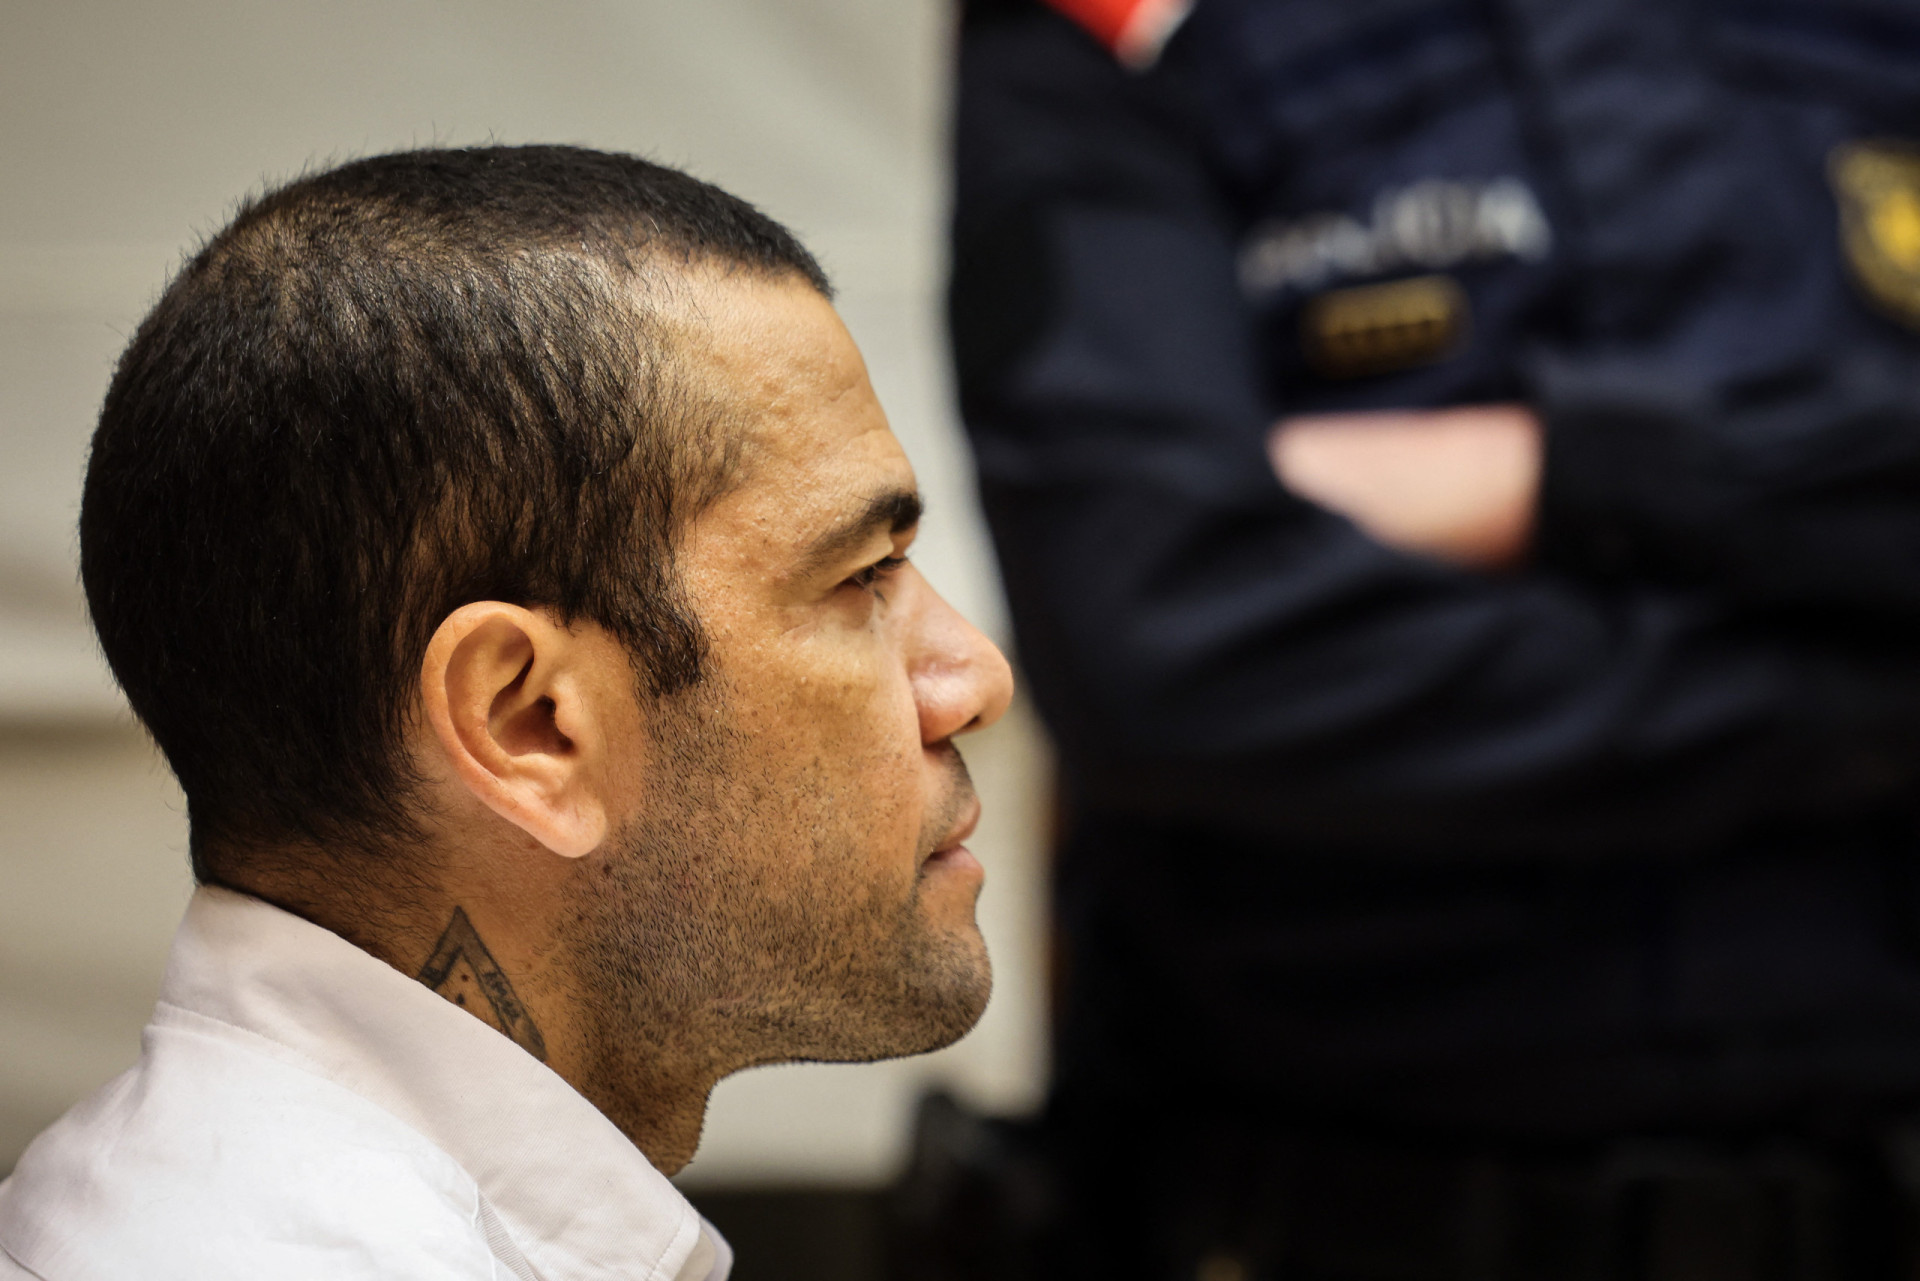 Você está visualizando atualmente As primeiras imagens de Daniel Alves no tribunal, um ano após a detenção